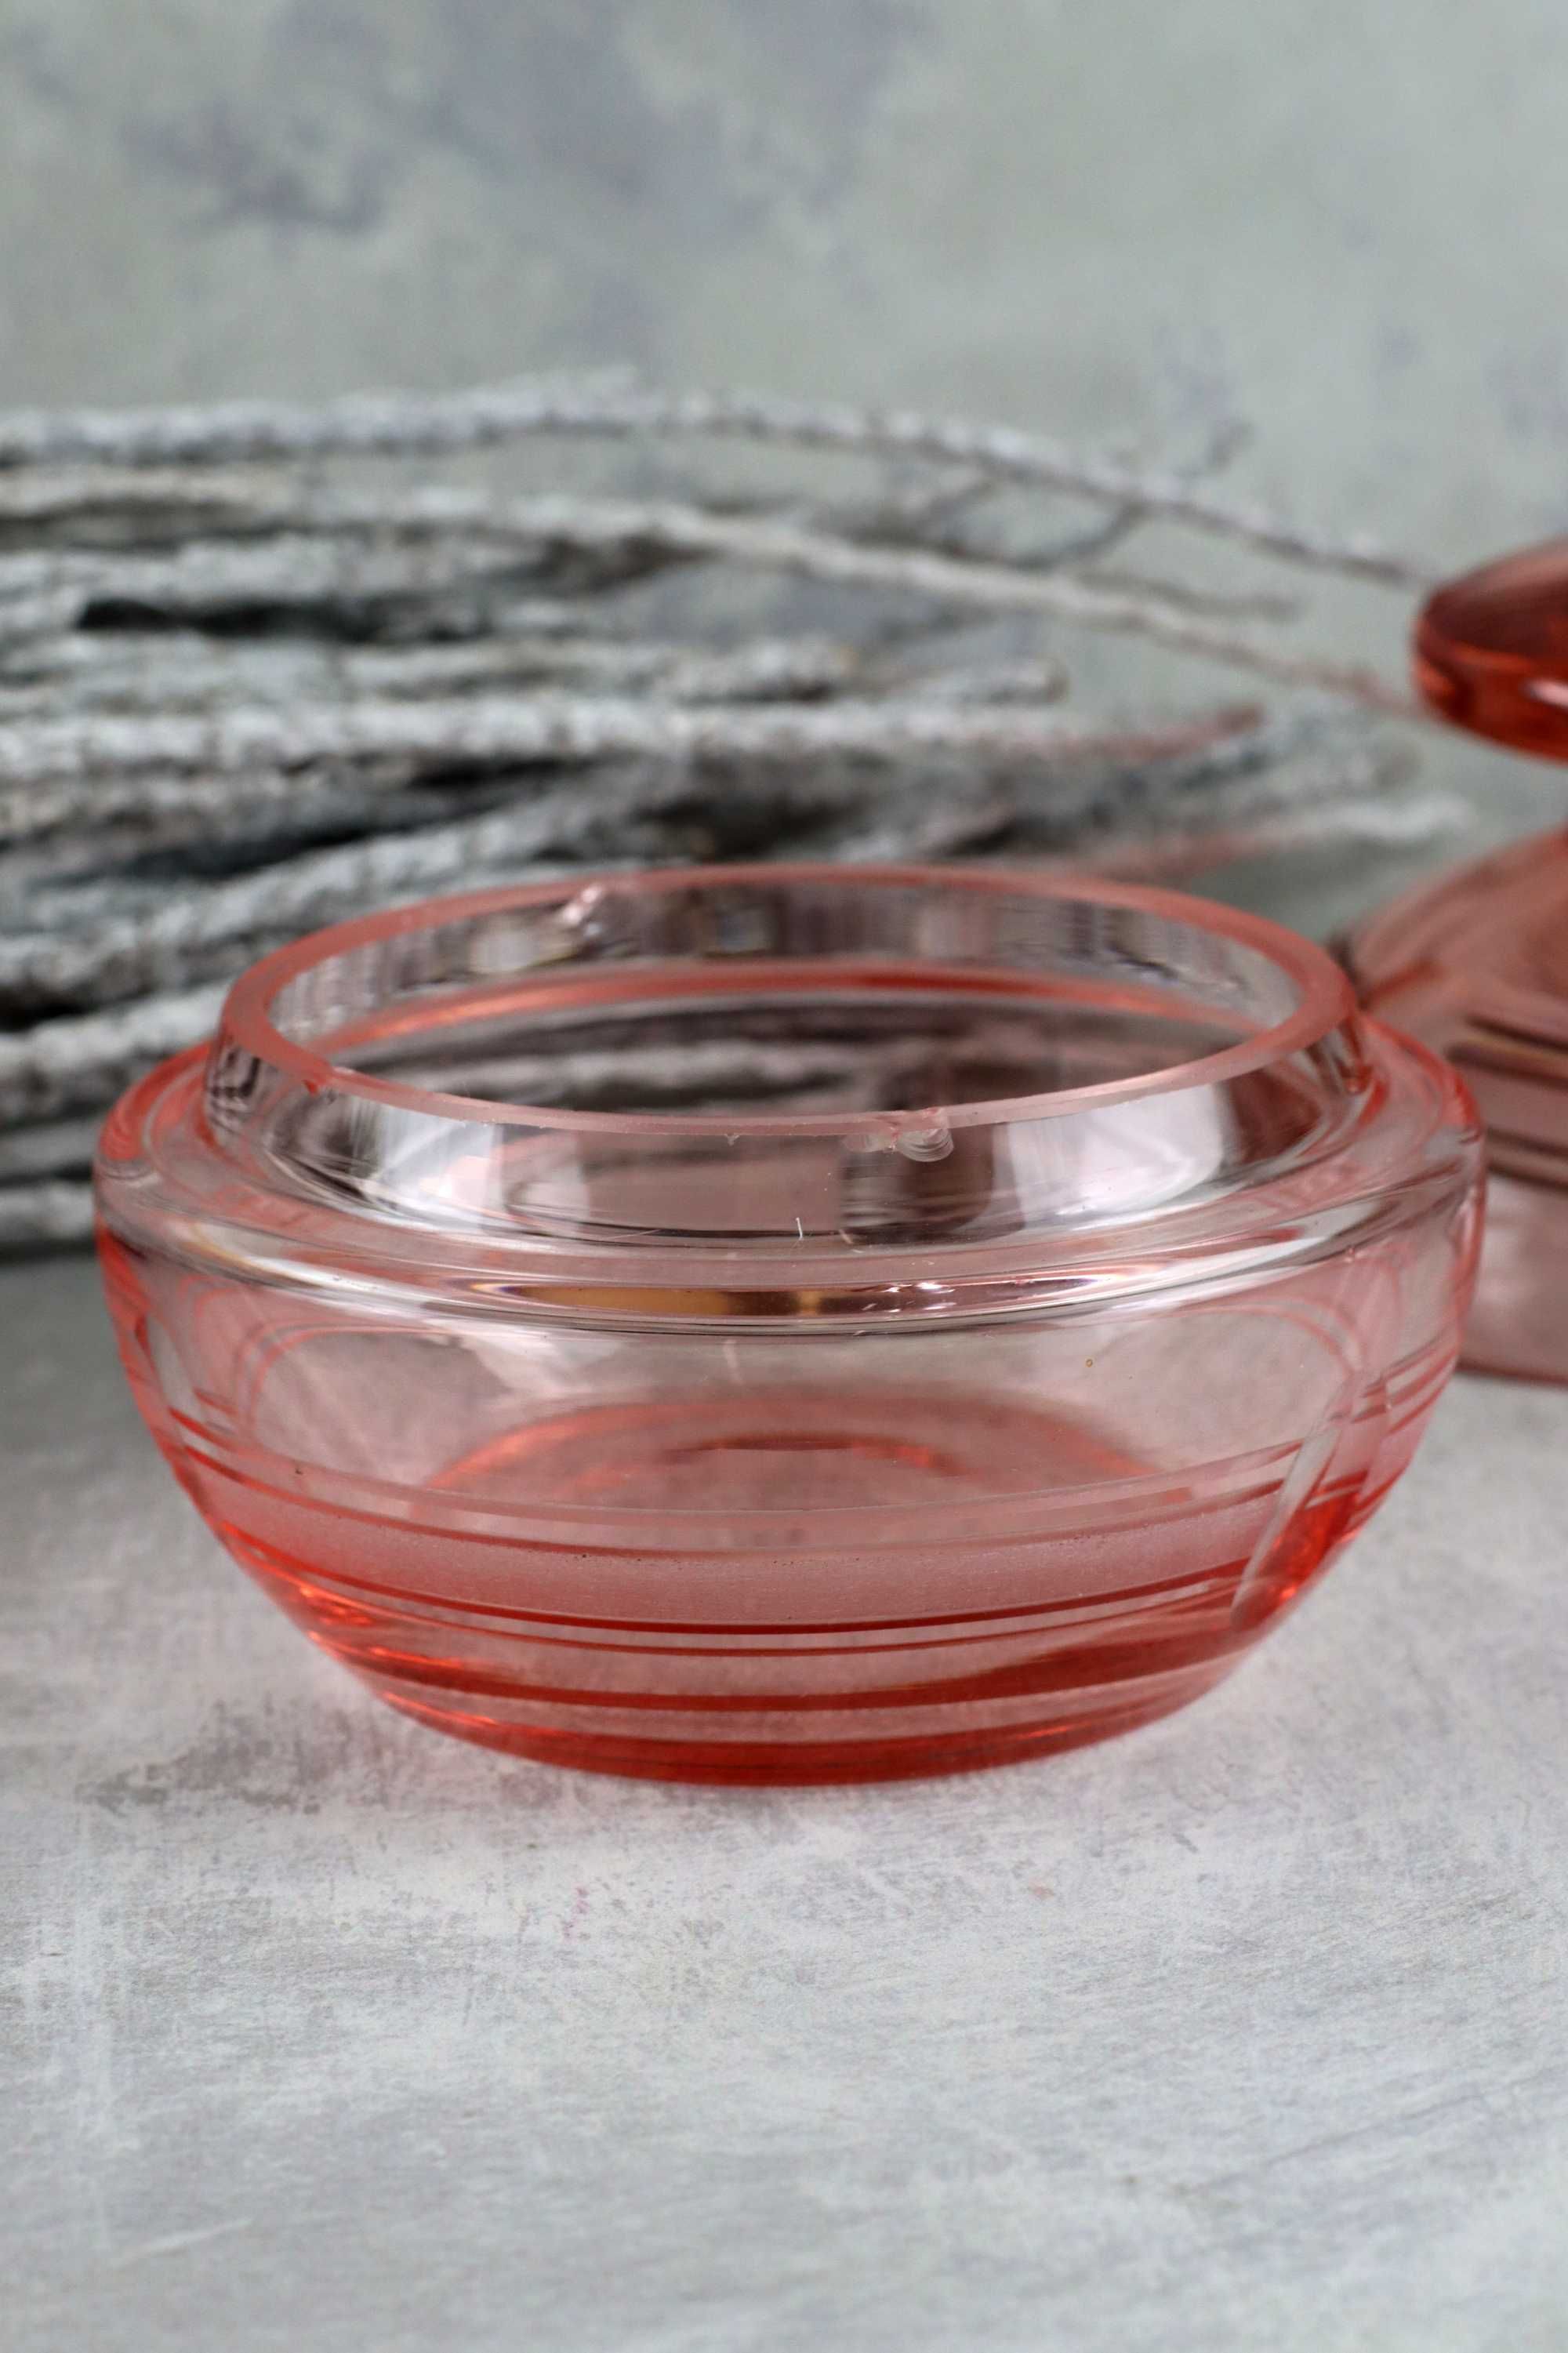 Szklana różowa bombonierka szkło prl vintage stare